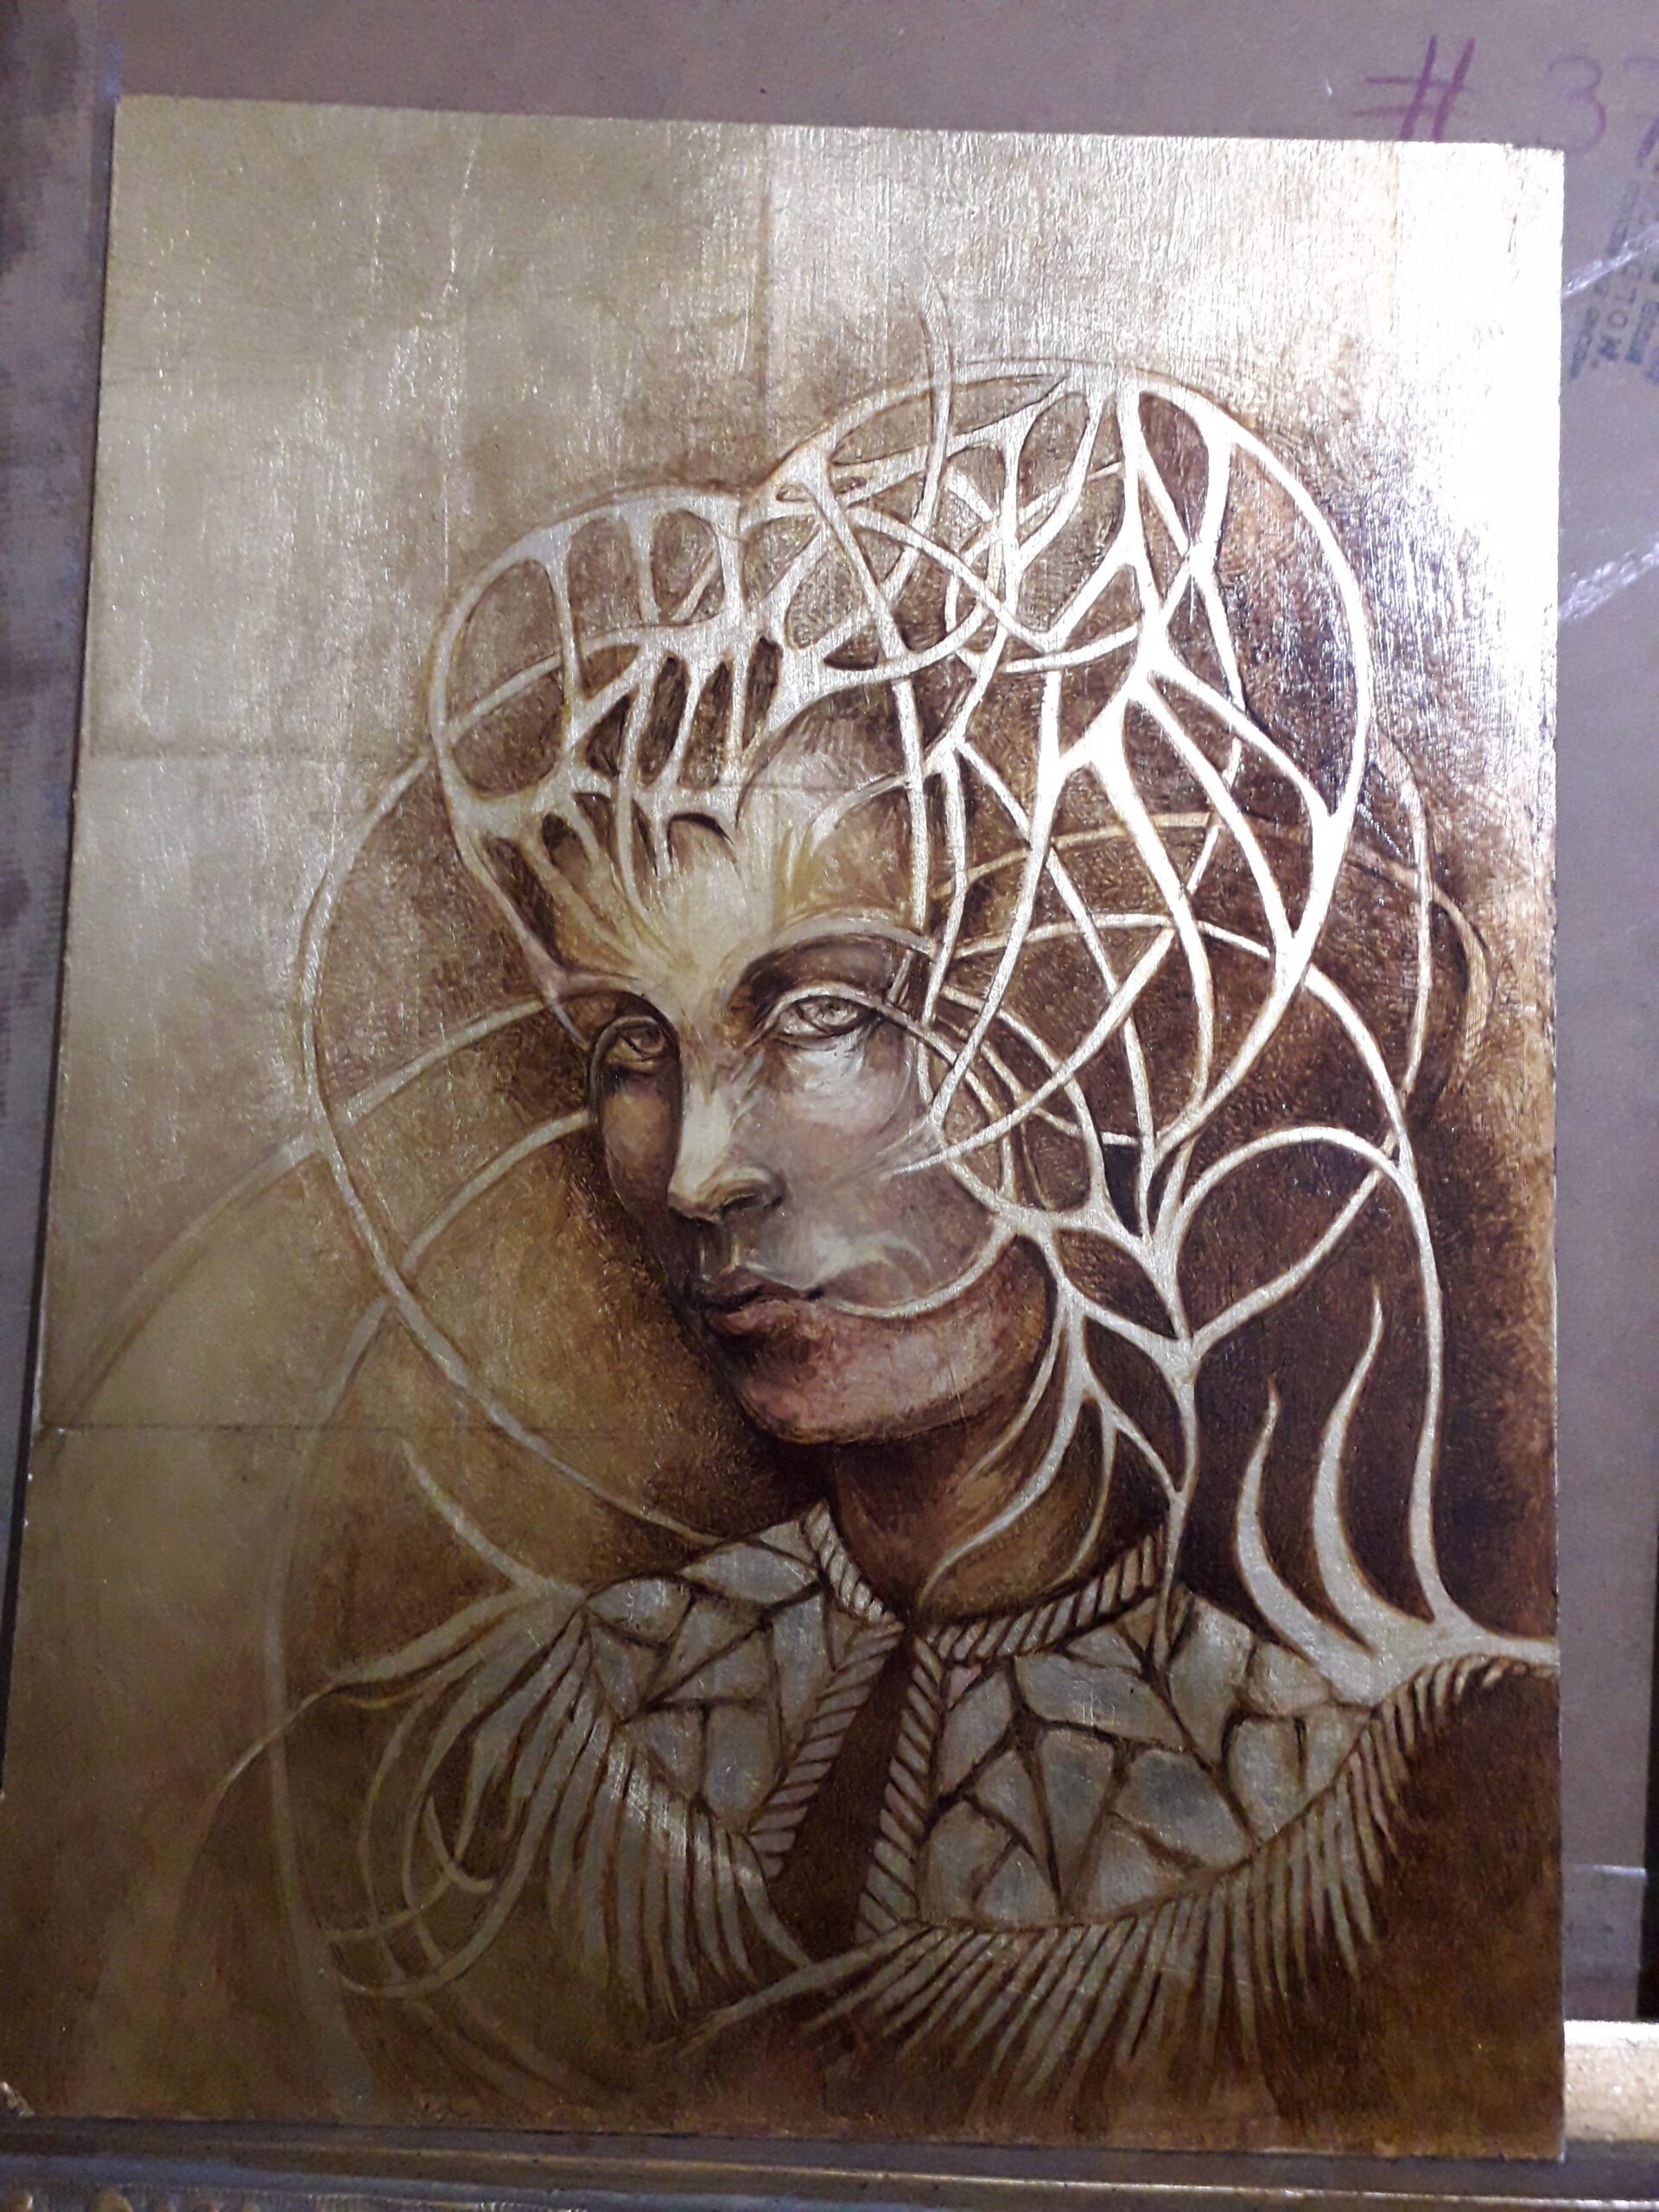 Título: “Rostro en Dorado”
Técnica: óleo sobre tela, sobre tabla
Medidas: 40 x 30 cm 
Autora: Itzeel Reyes